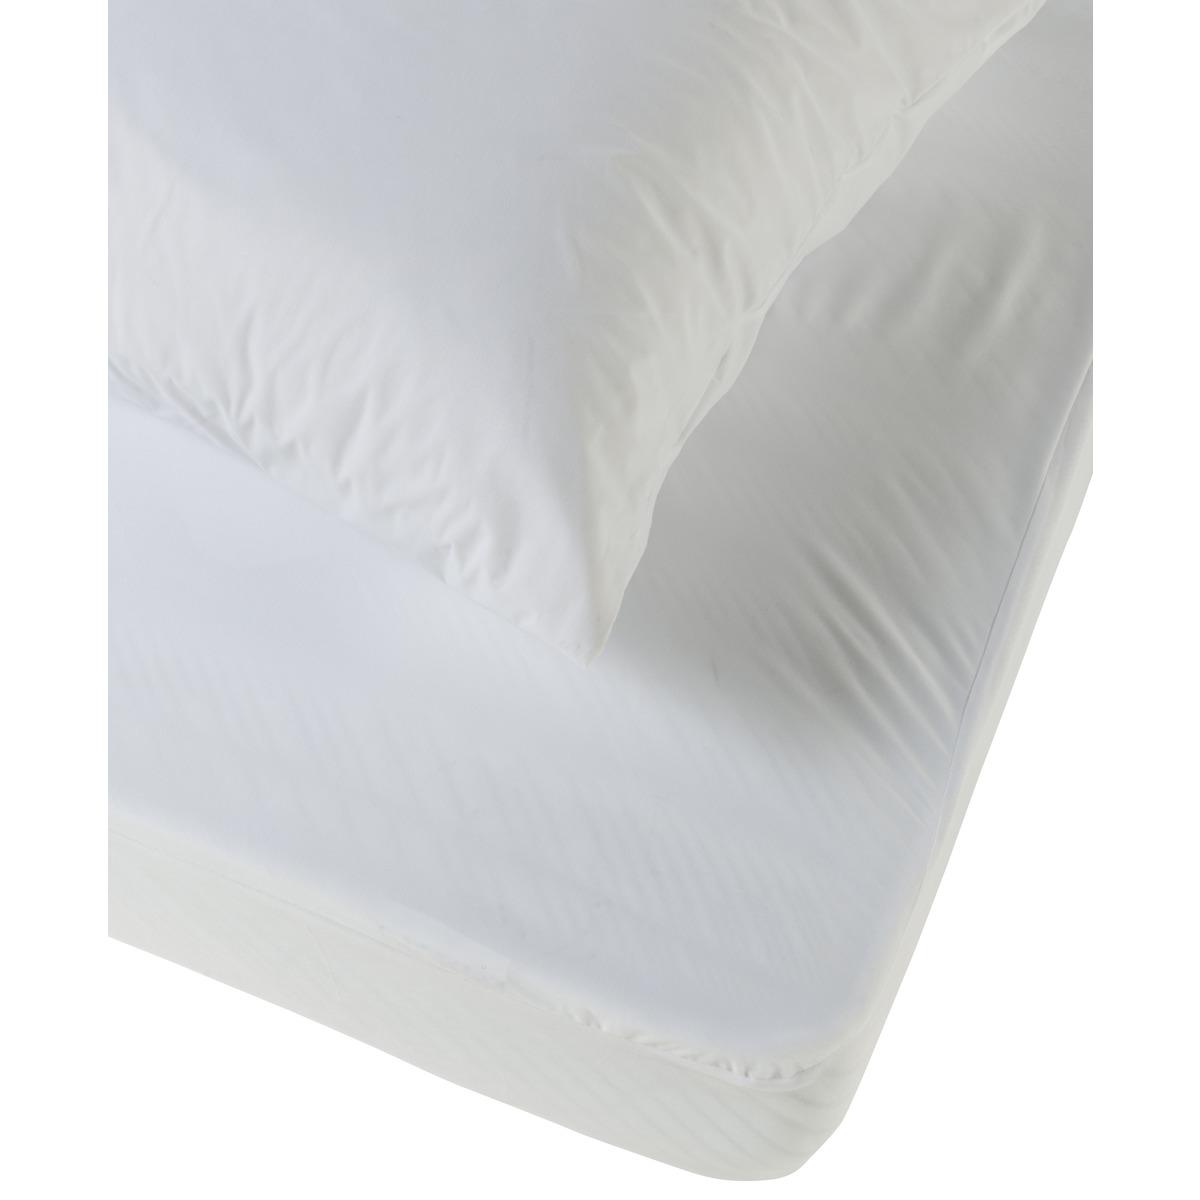 Protège-matelas imperméable + 2 protège-oreillers offerts - 160 x 200 cm - blanc